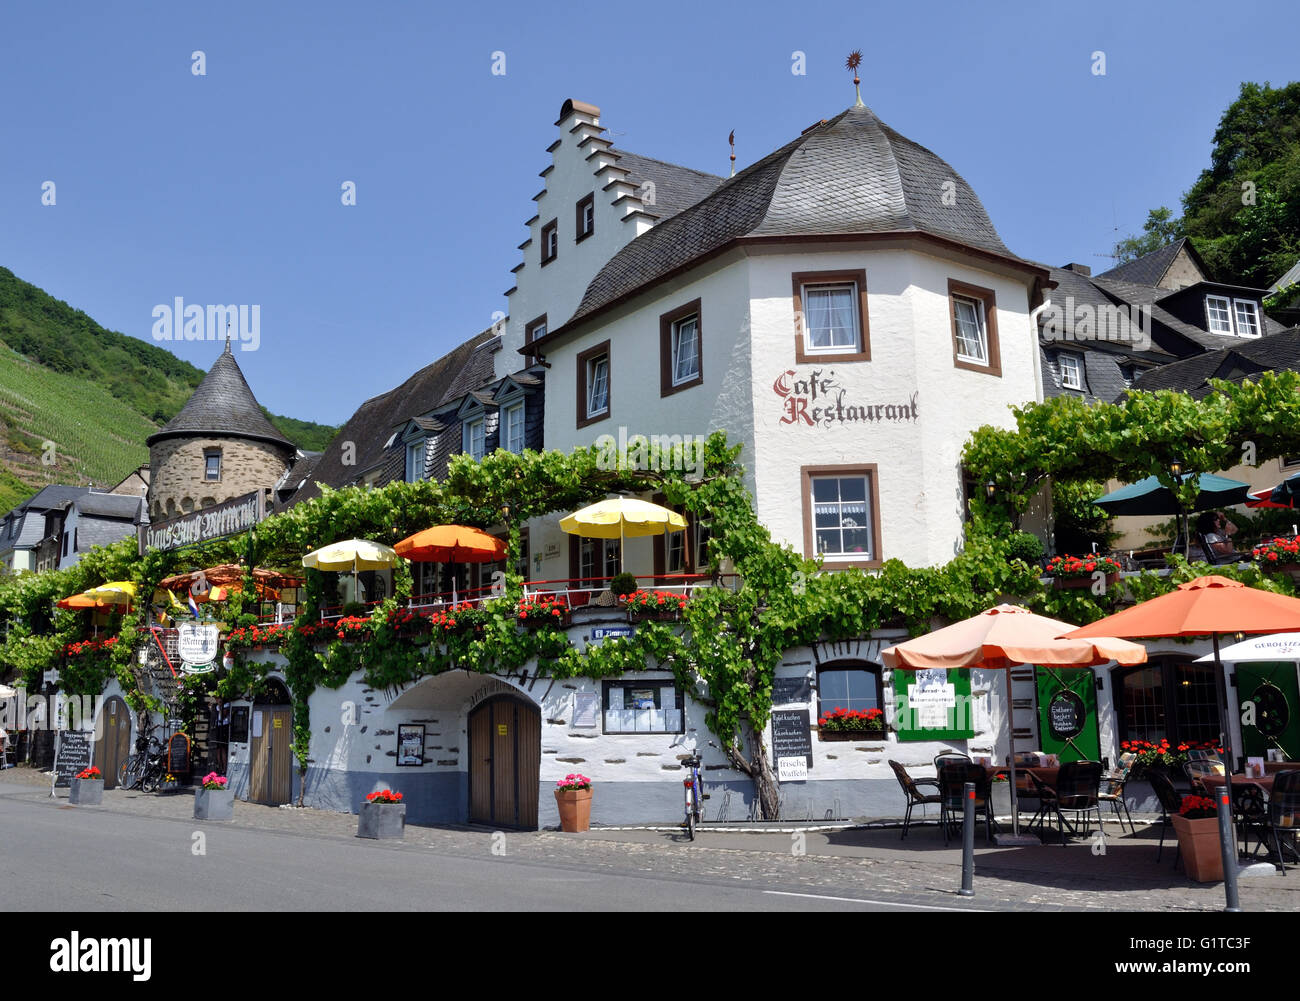 Cafe-Restaurant Haus Burg Metternich à Beilstein, sur la Moselle, l'Allemagne. Banque D'Images